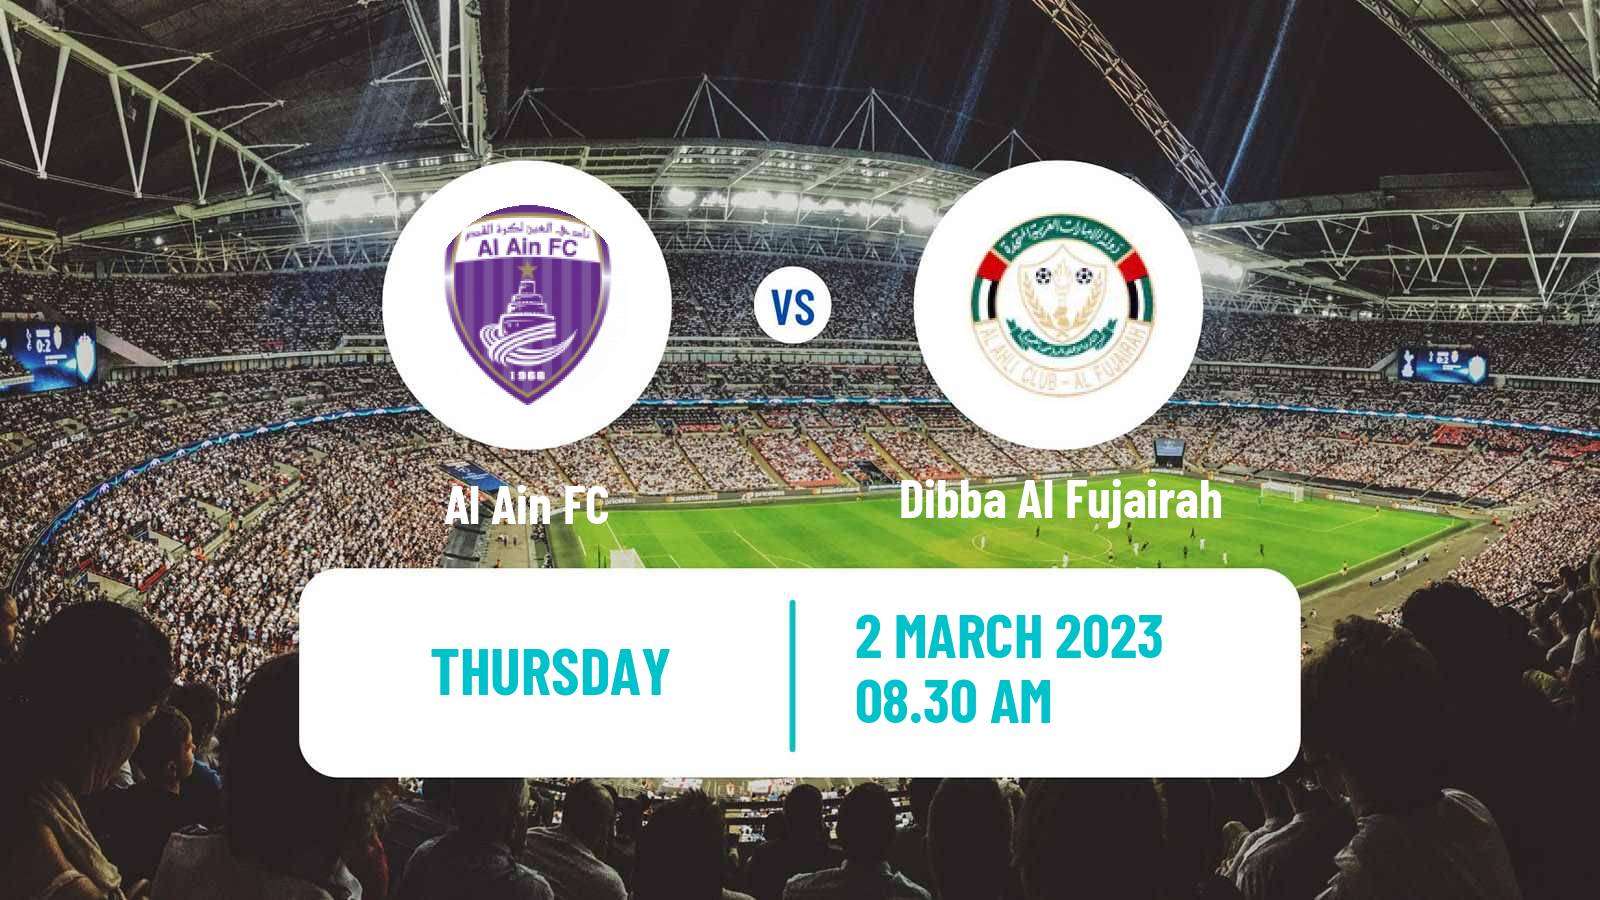 Soccer UAE Football League Al Ain - Dibba Al Fujairah